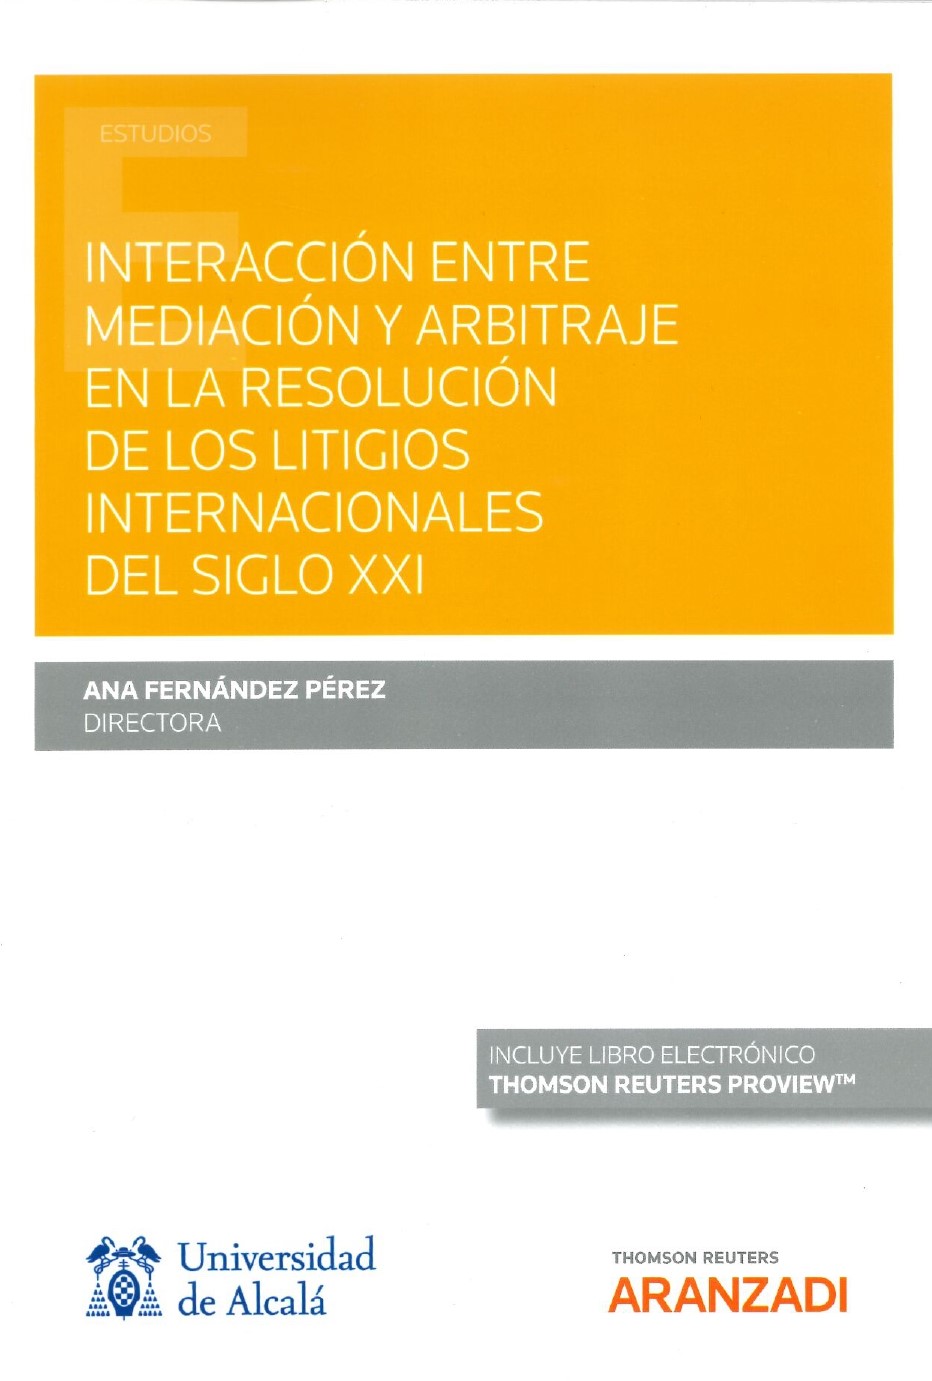 Imagen de portada del libro Interacción entre mediación y arbitraje en la resolución de los litigios internacionales del siglo XXI